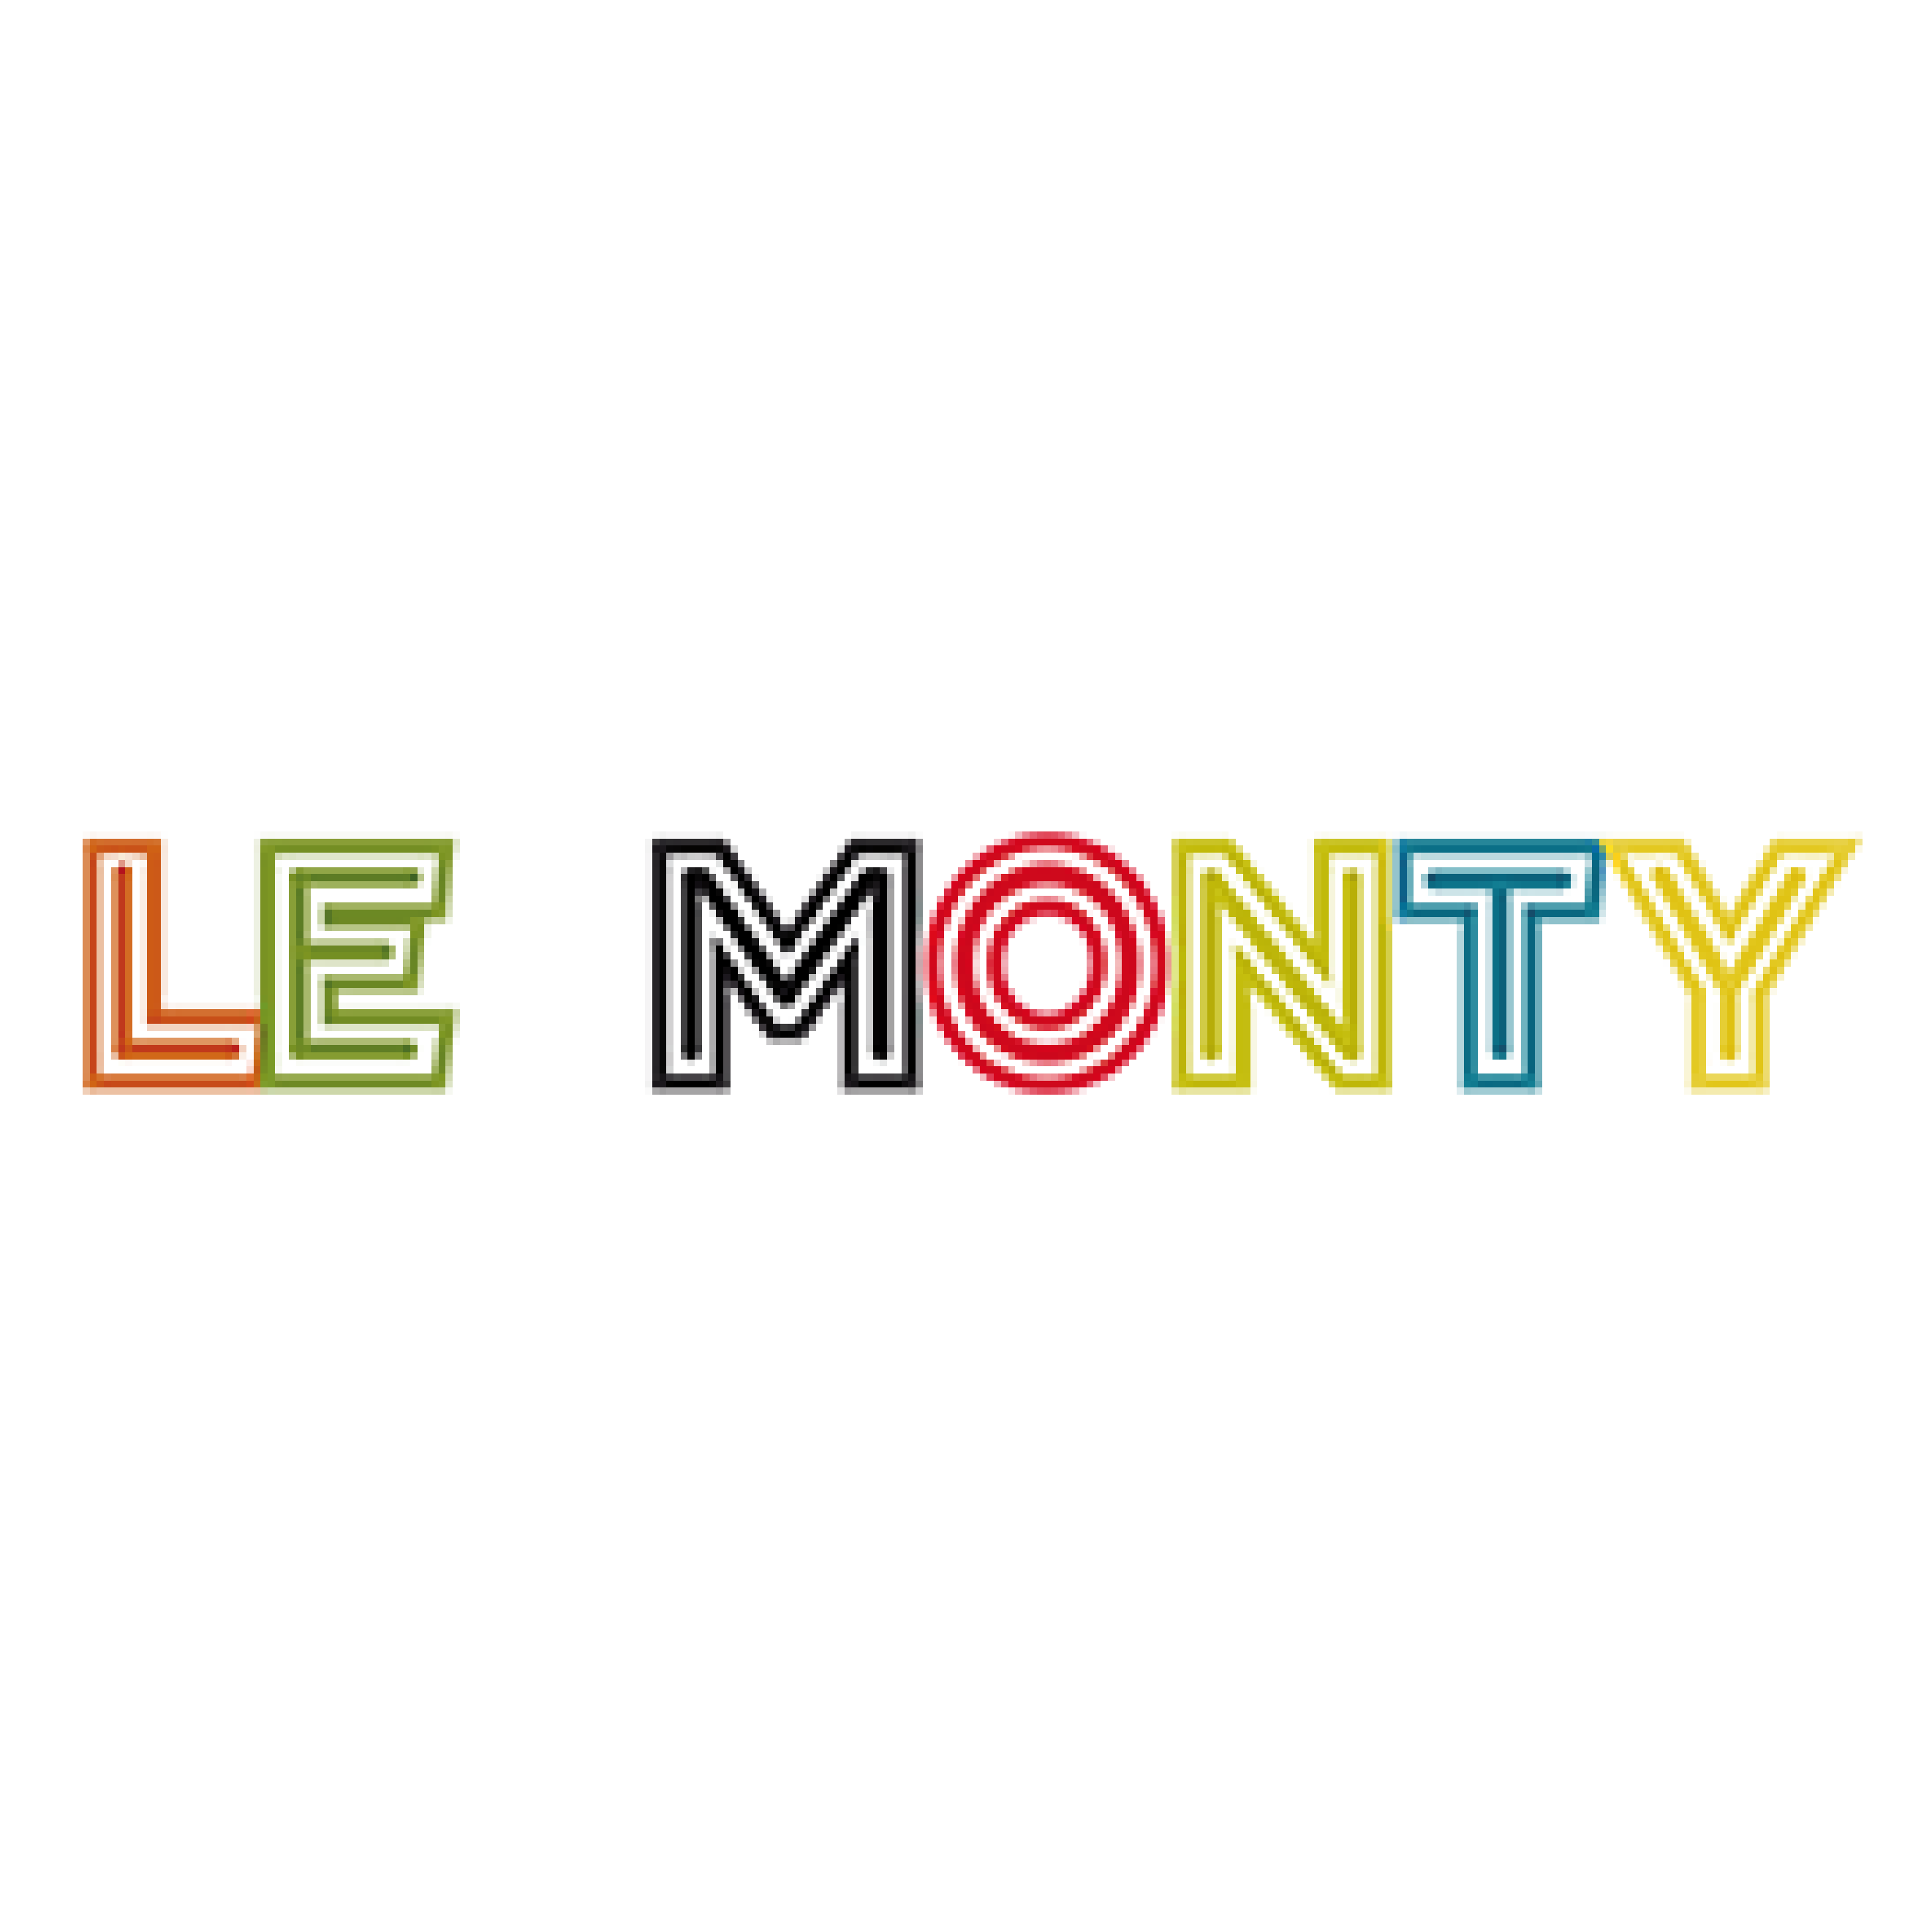 Le Monty-01